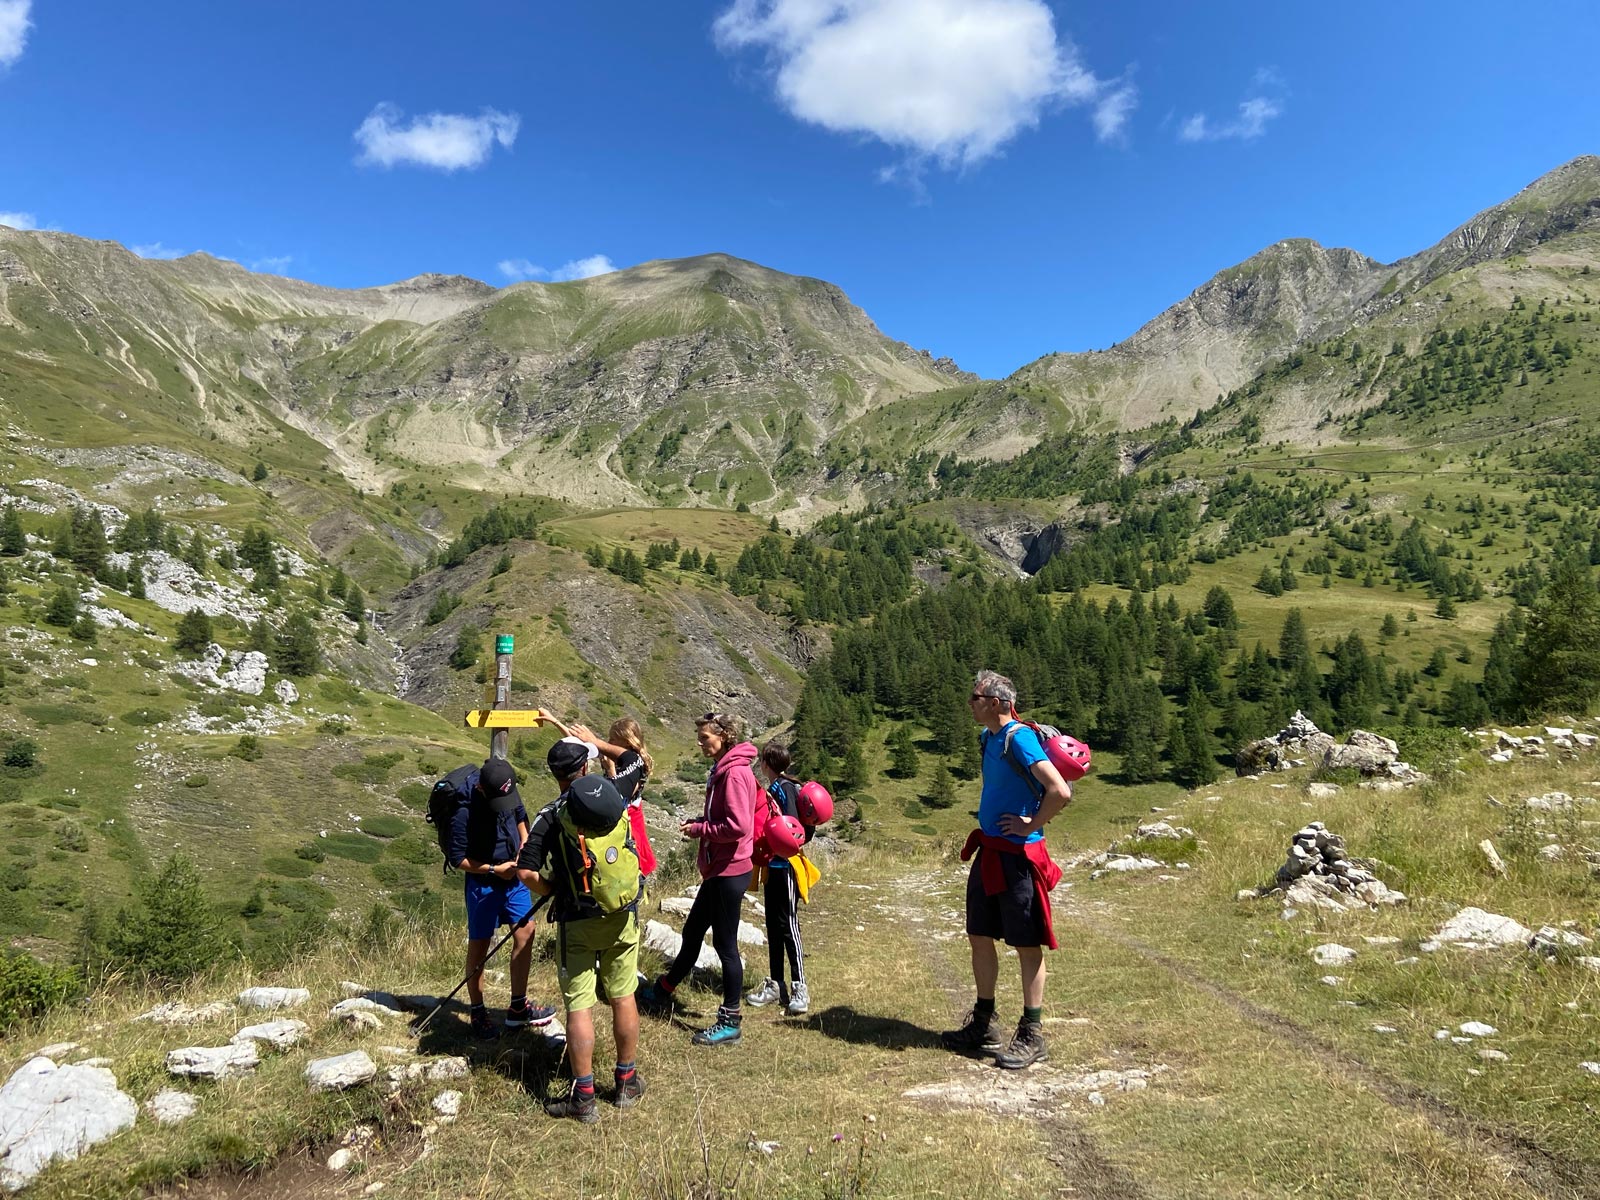 Sally-Ann Woodrow - Summer Multi Activity Holiday Alps